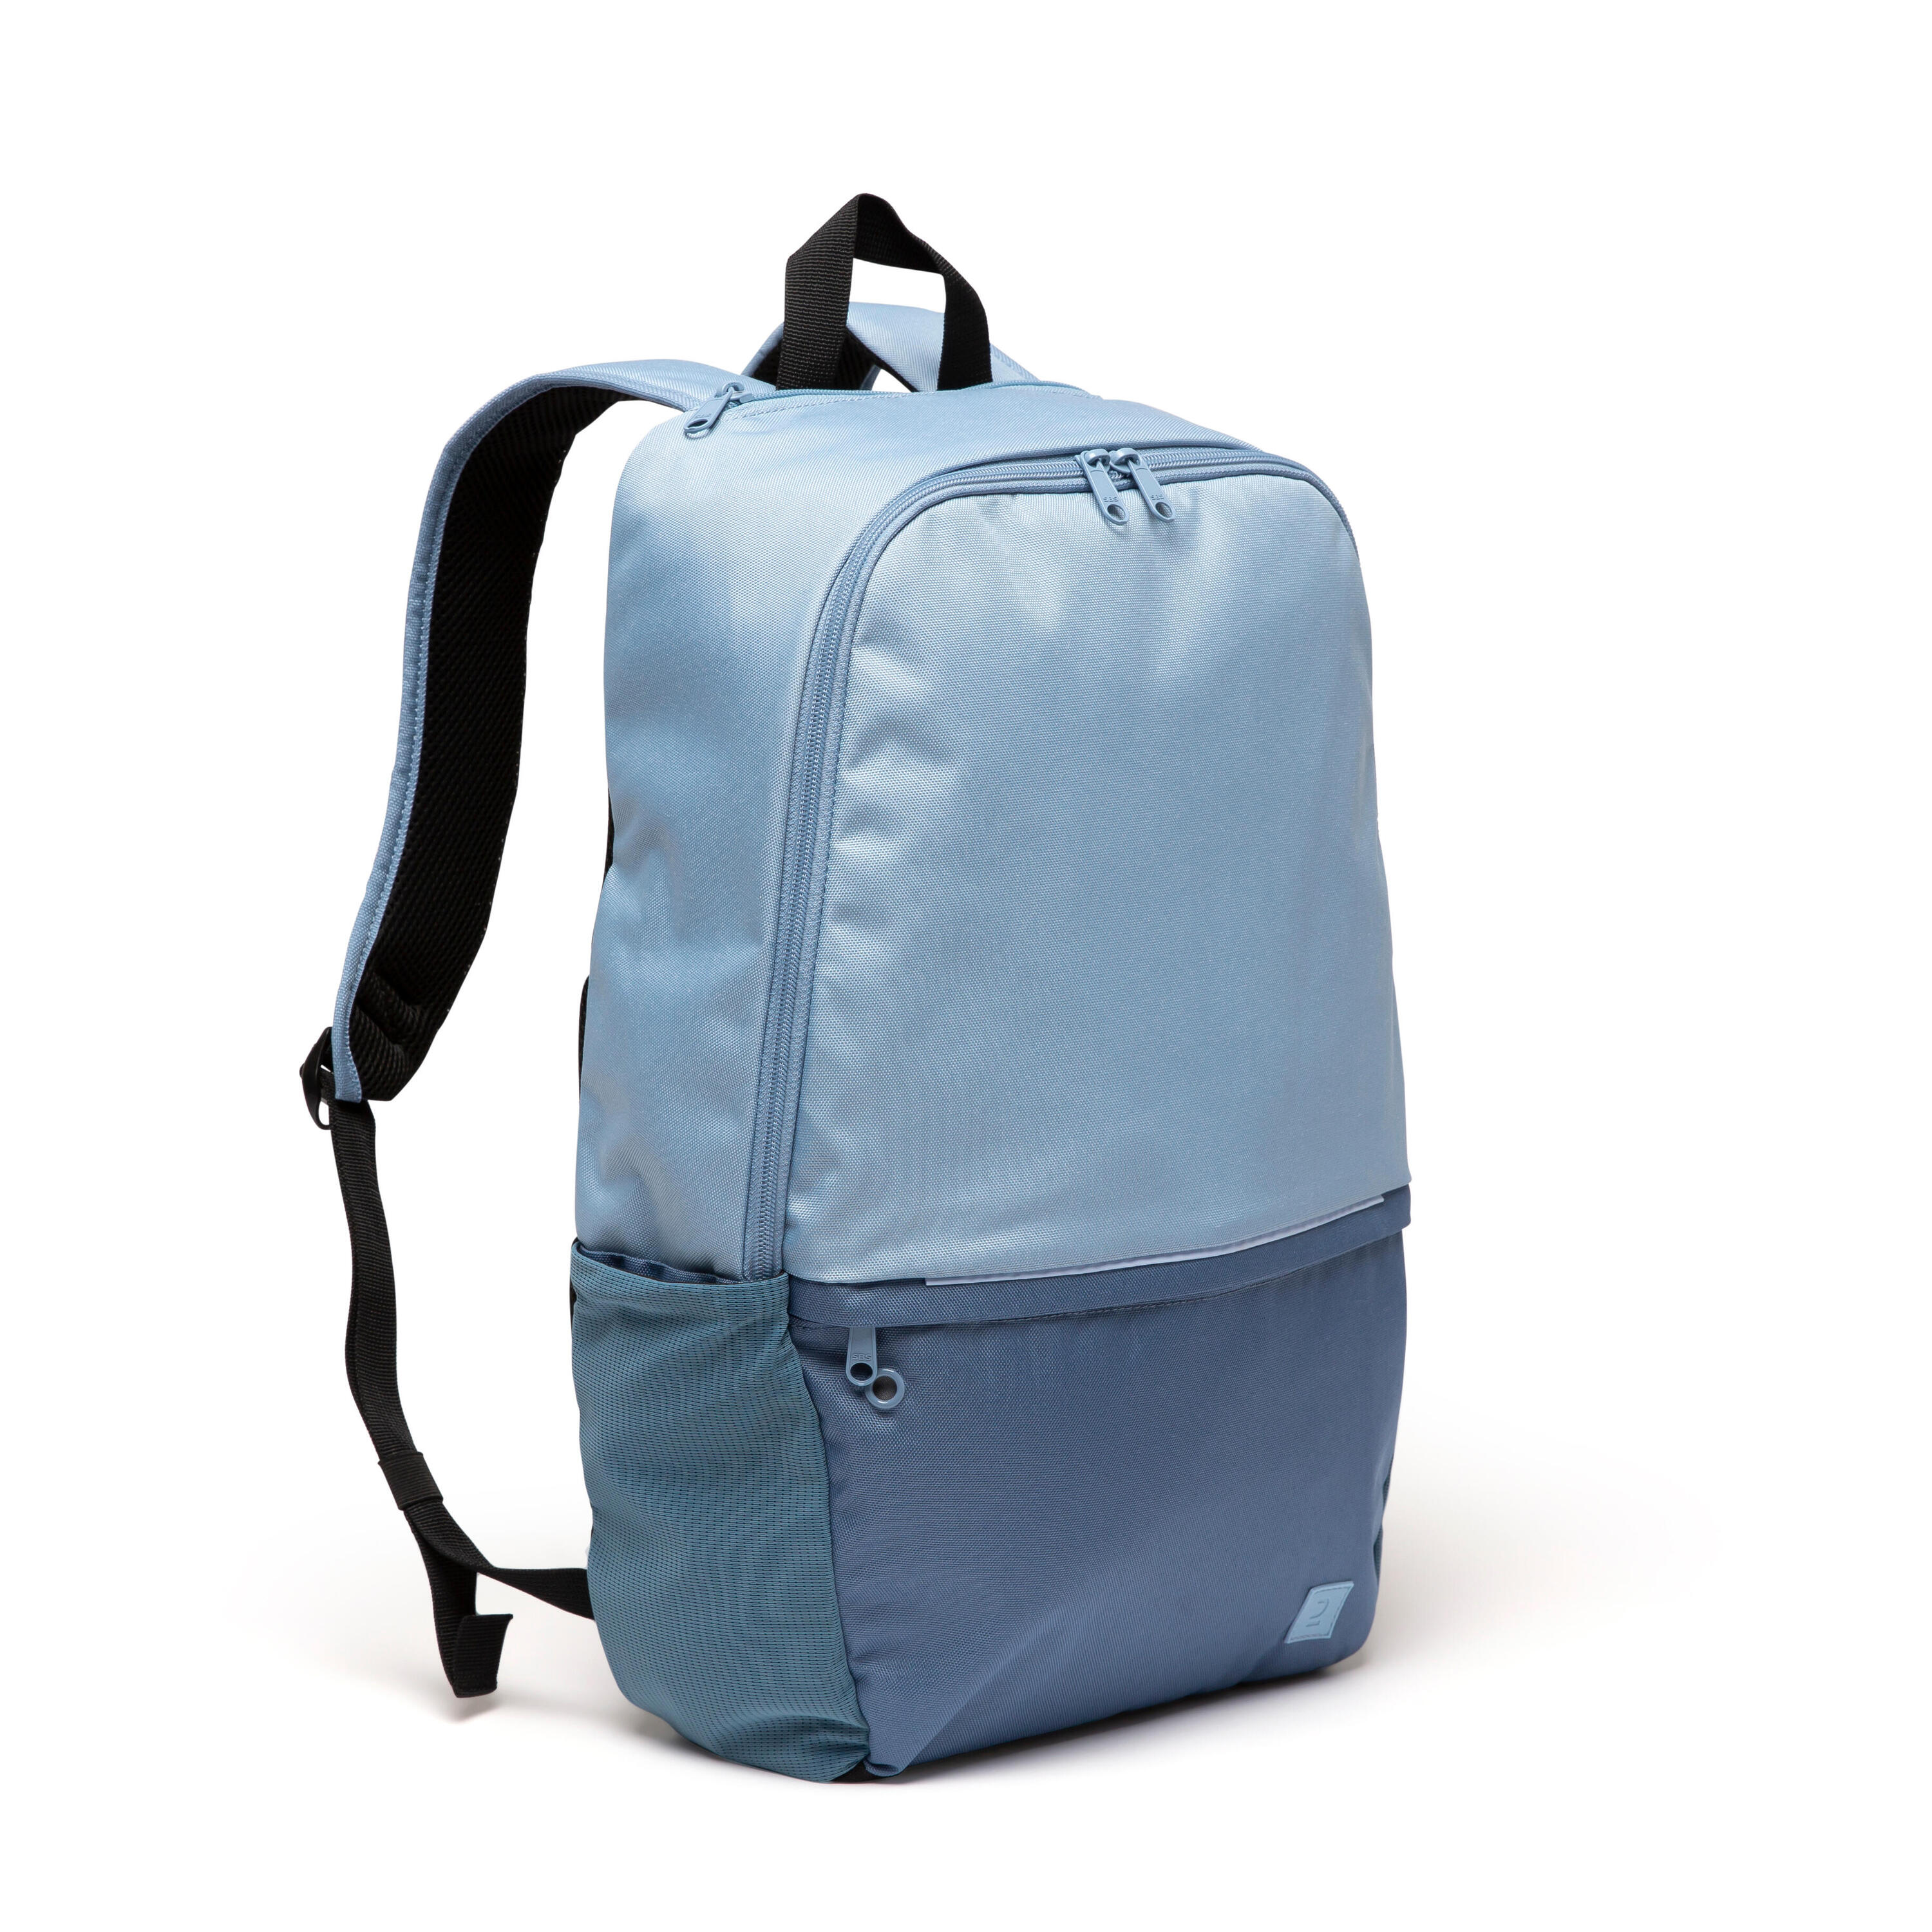 School Bags and Kids Backpacks